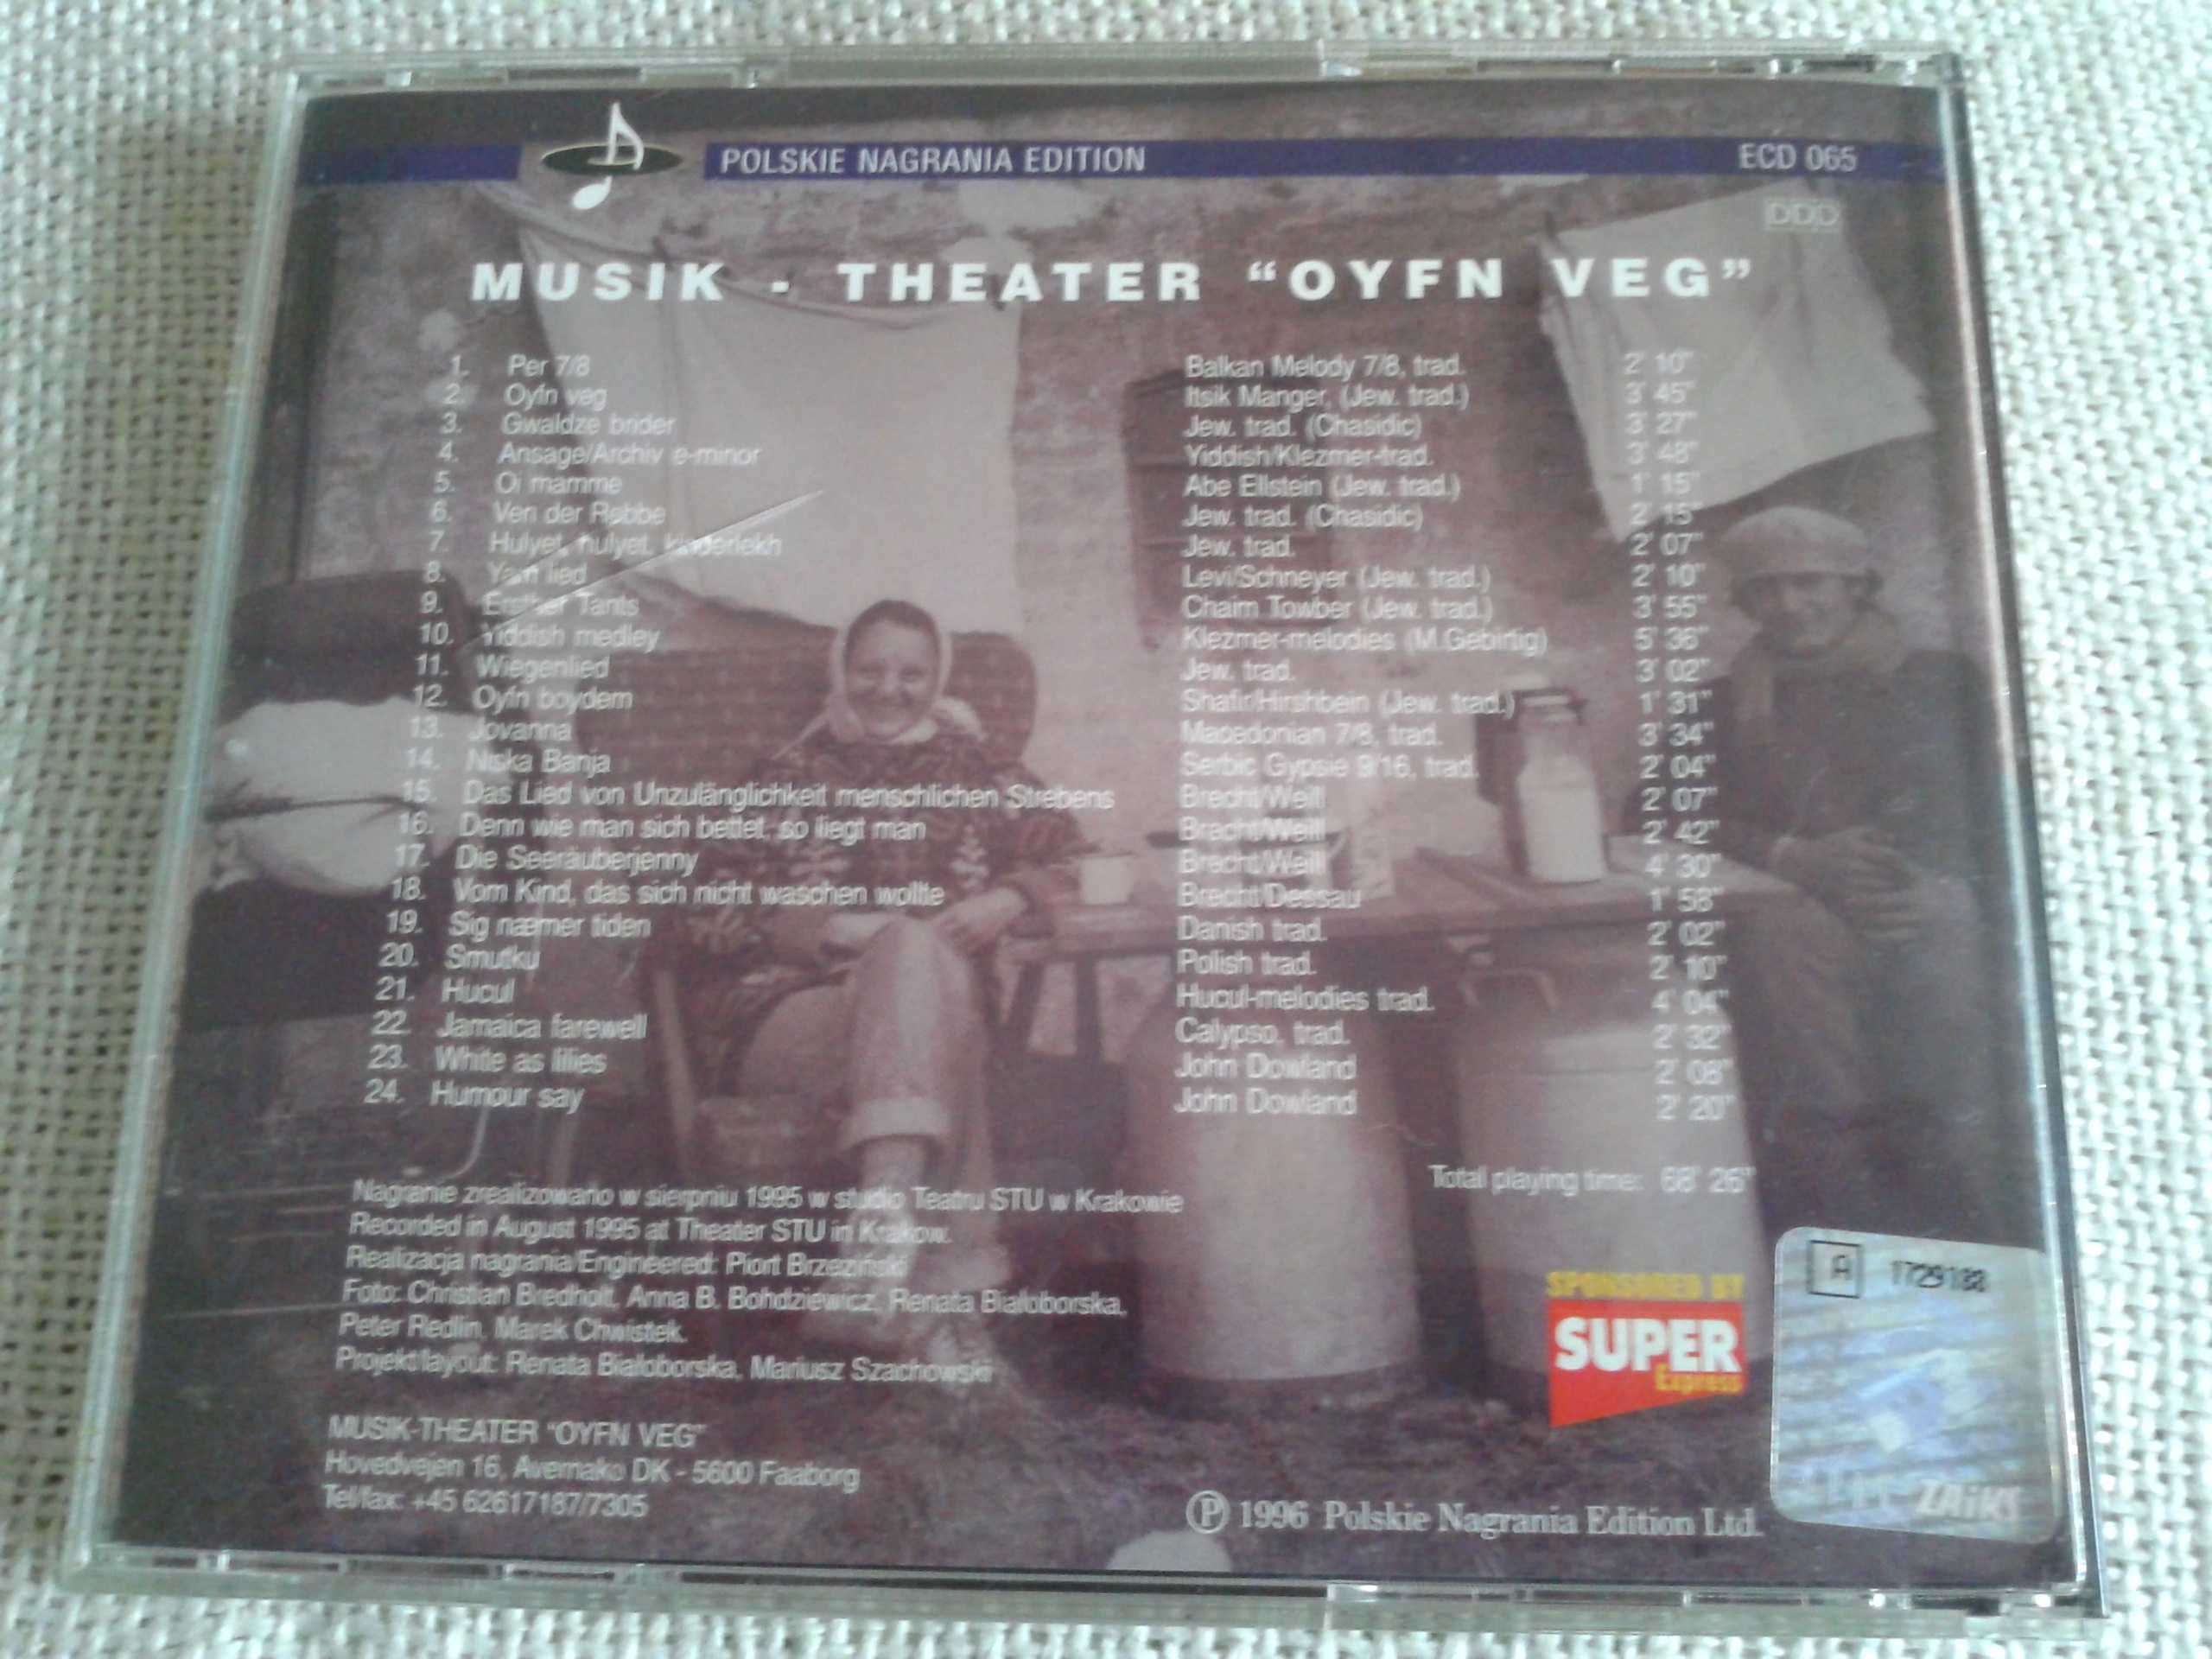 Musik Theater Oyfn Veg - Hulyet Hulyet  CD